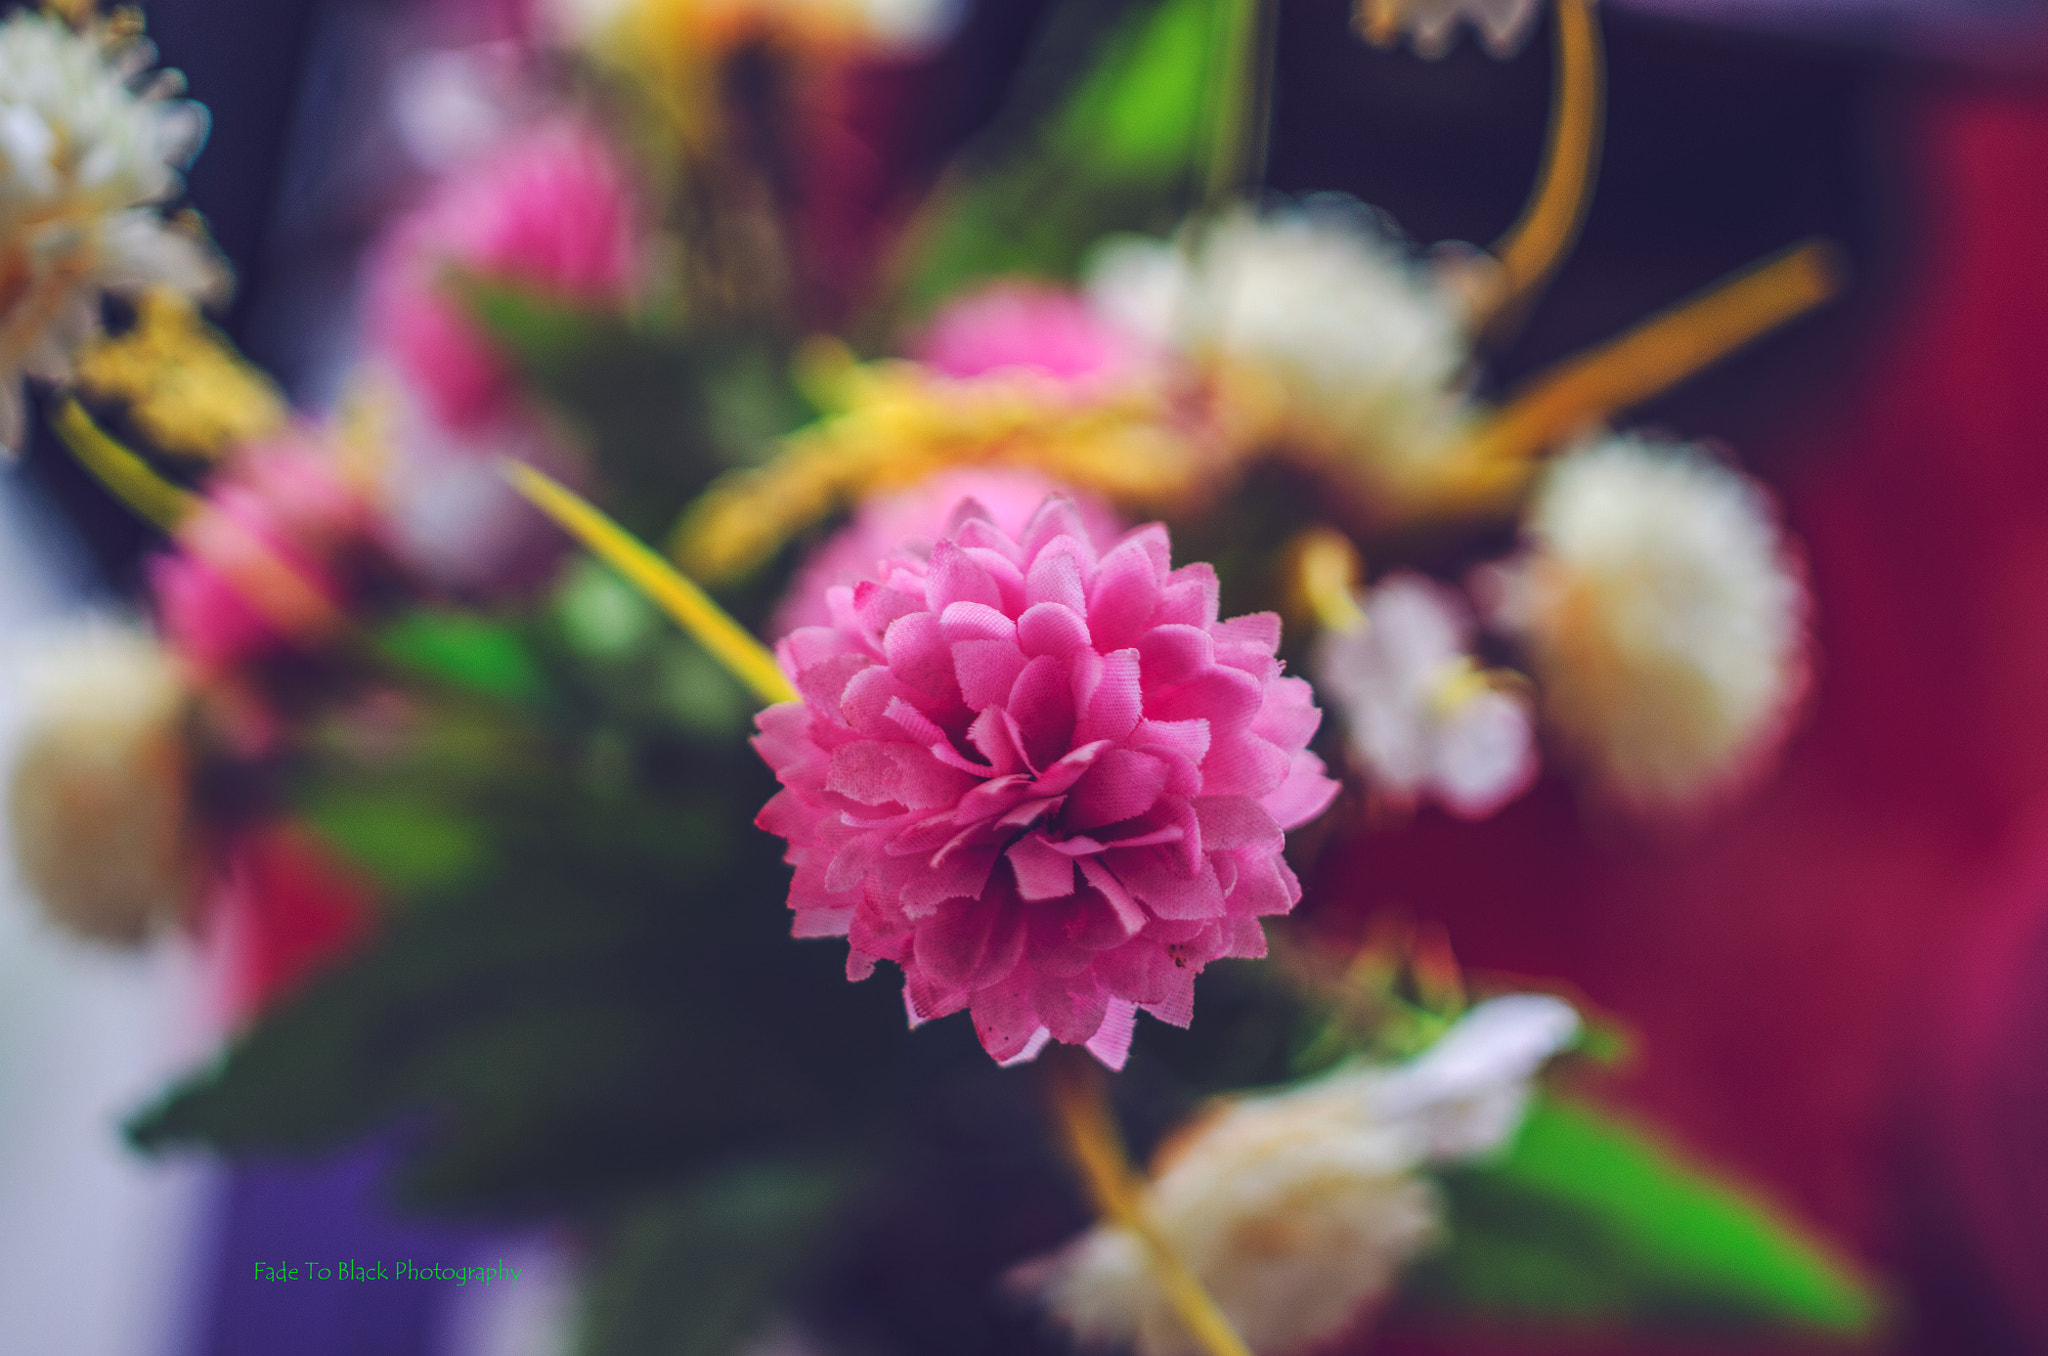 Nikon D5100 + Samyang 35mm F1.4 AS UMC sample photo. Pink blossoms photography